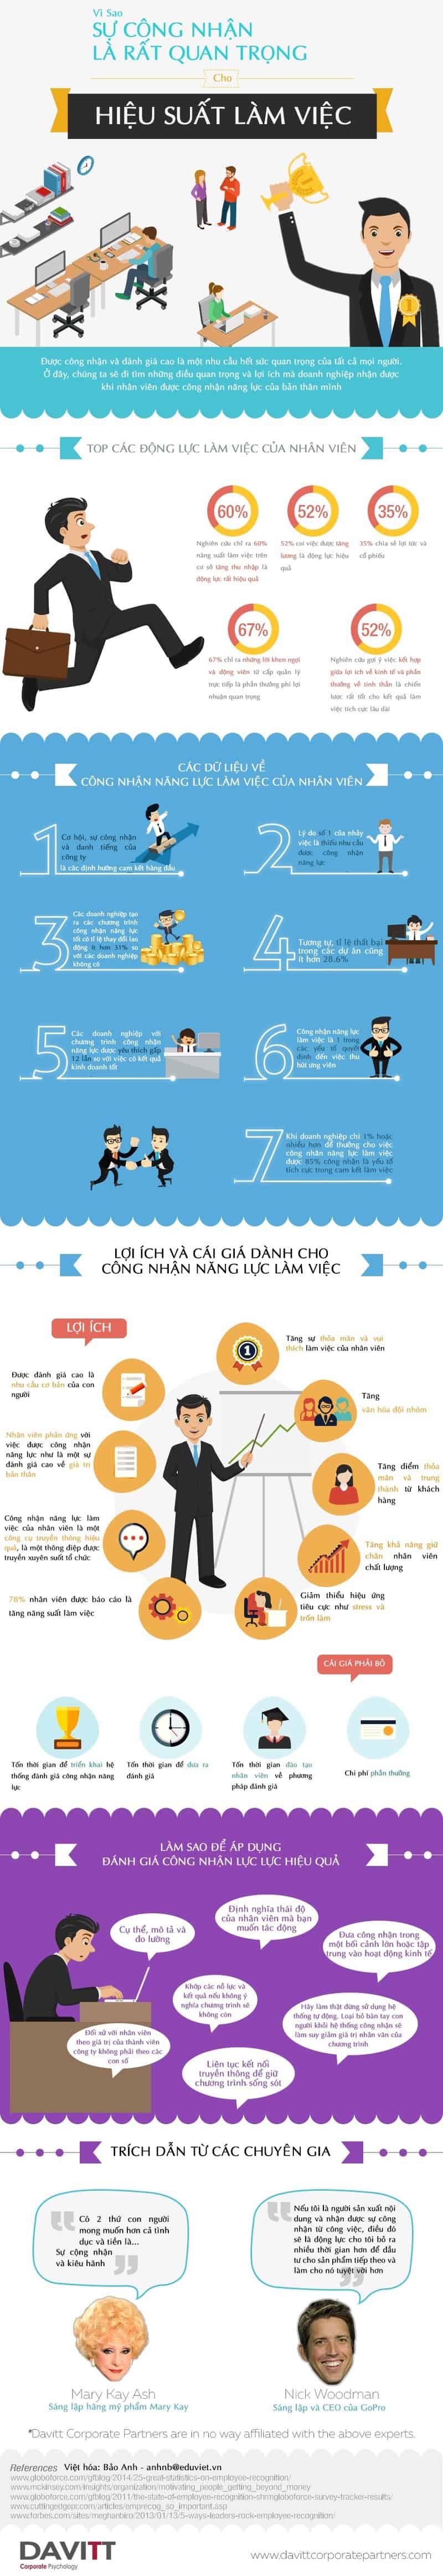 Infographic_Su_Cong_Nhan_va_Hieu_Suat_Lam_Viec